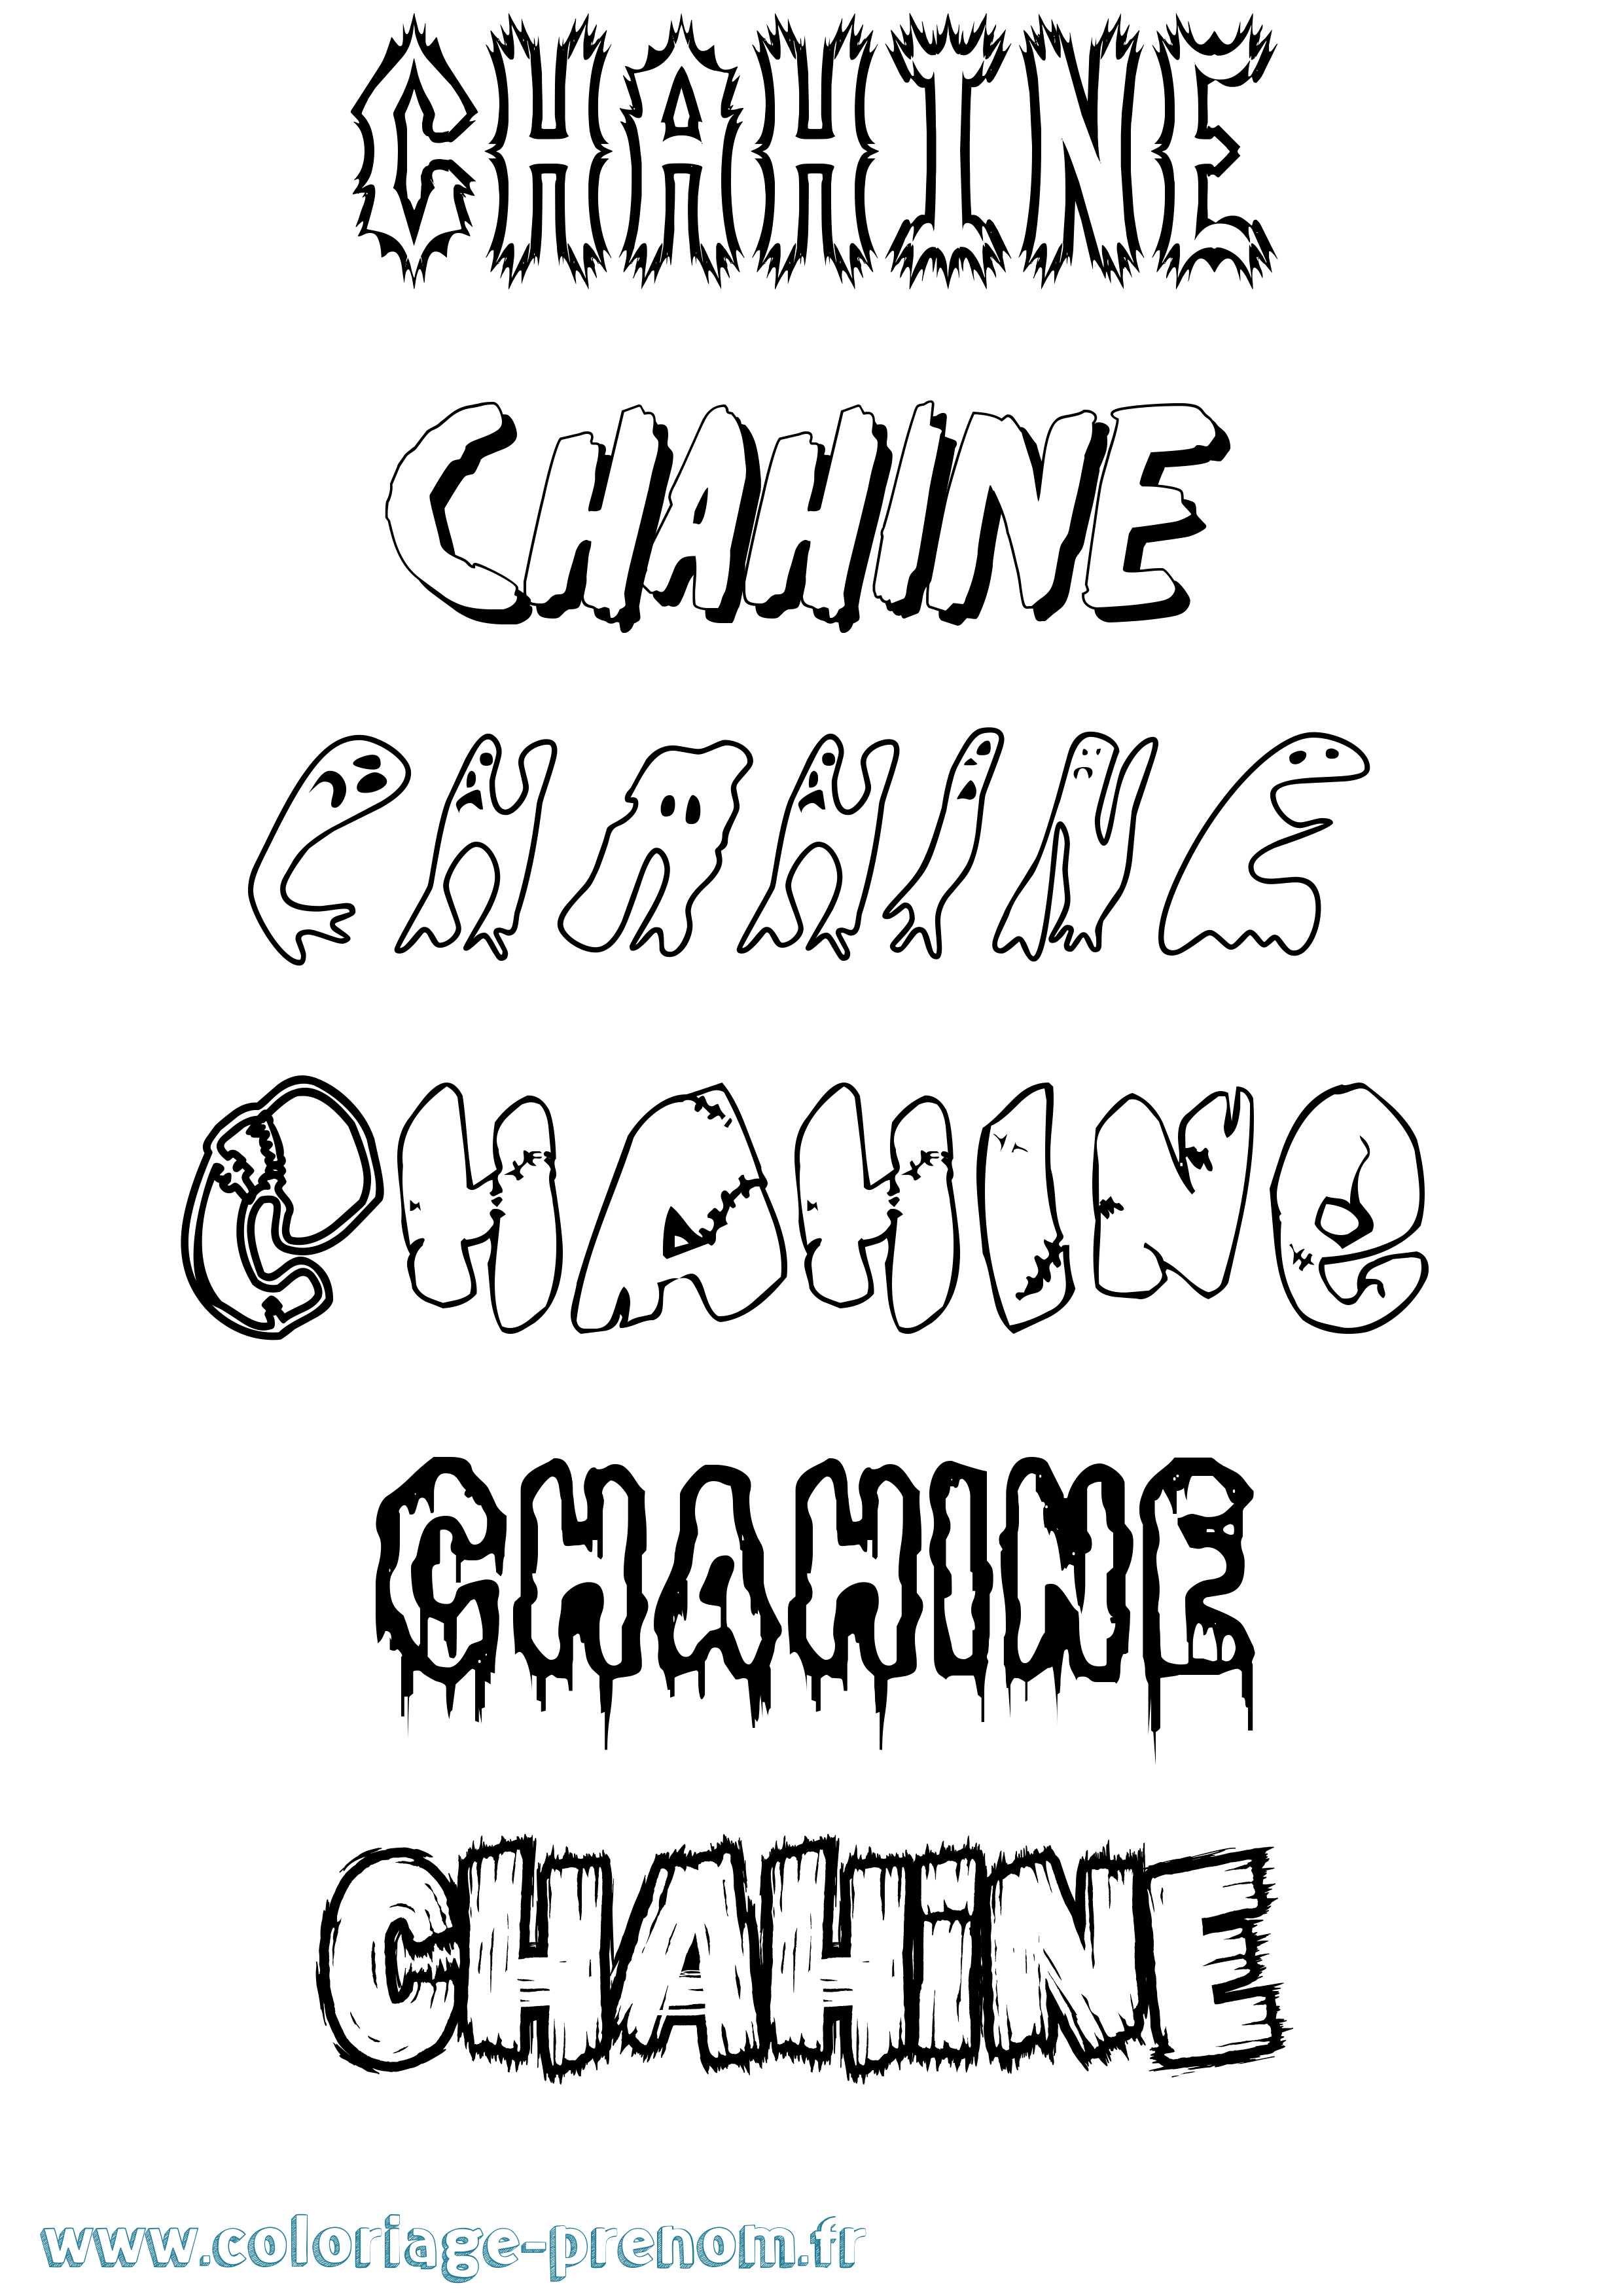 Coloriage prénom Chahine